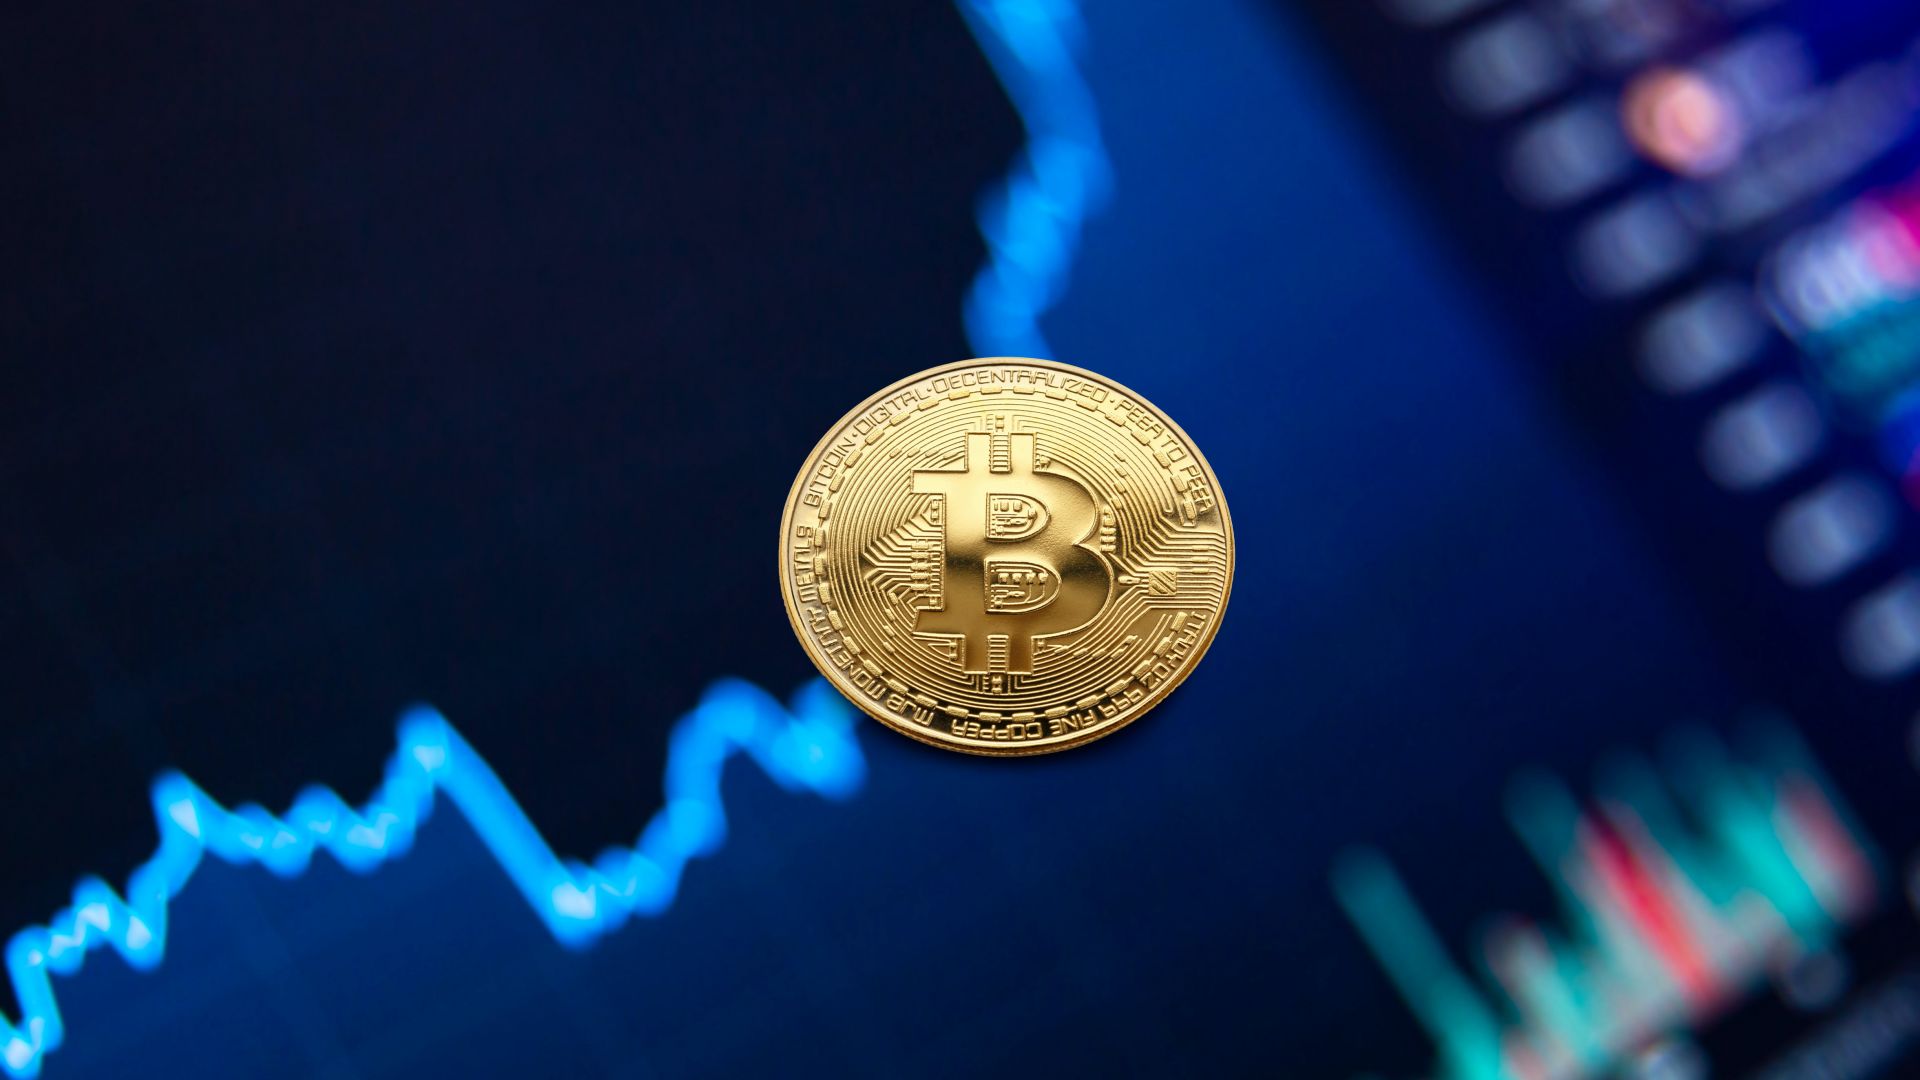 Bitcoin surpasses $44,000 mark